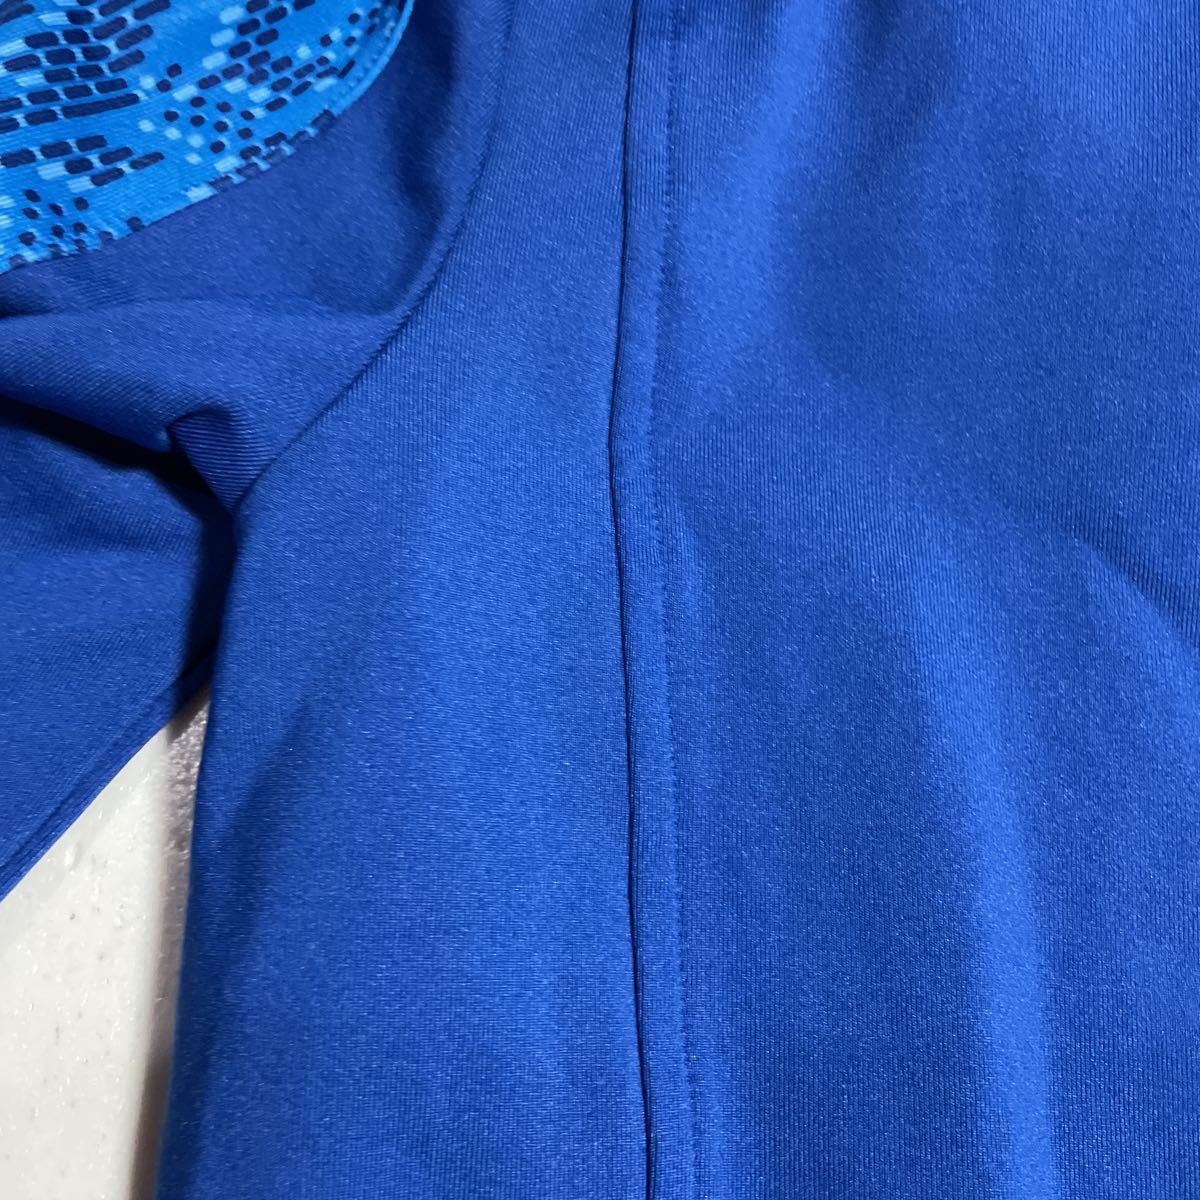  Adidas adidas синий голубой с капюшоном тренировка жакет женский OT размер 